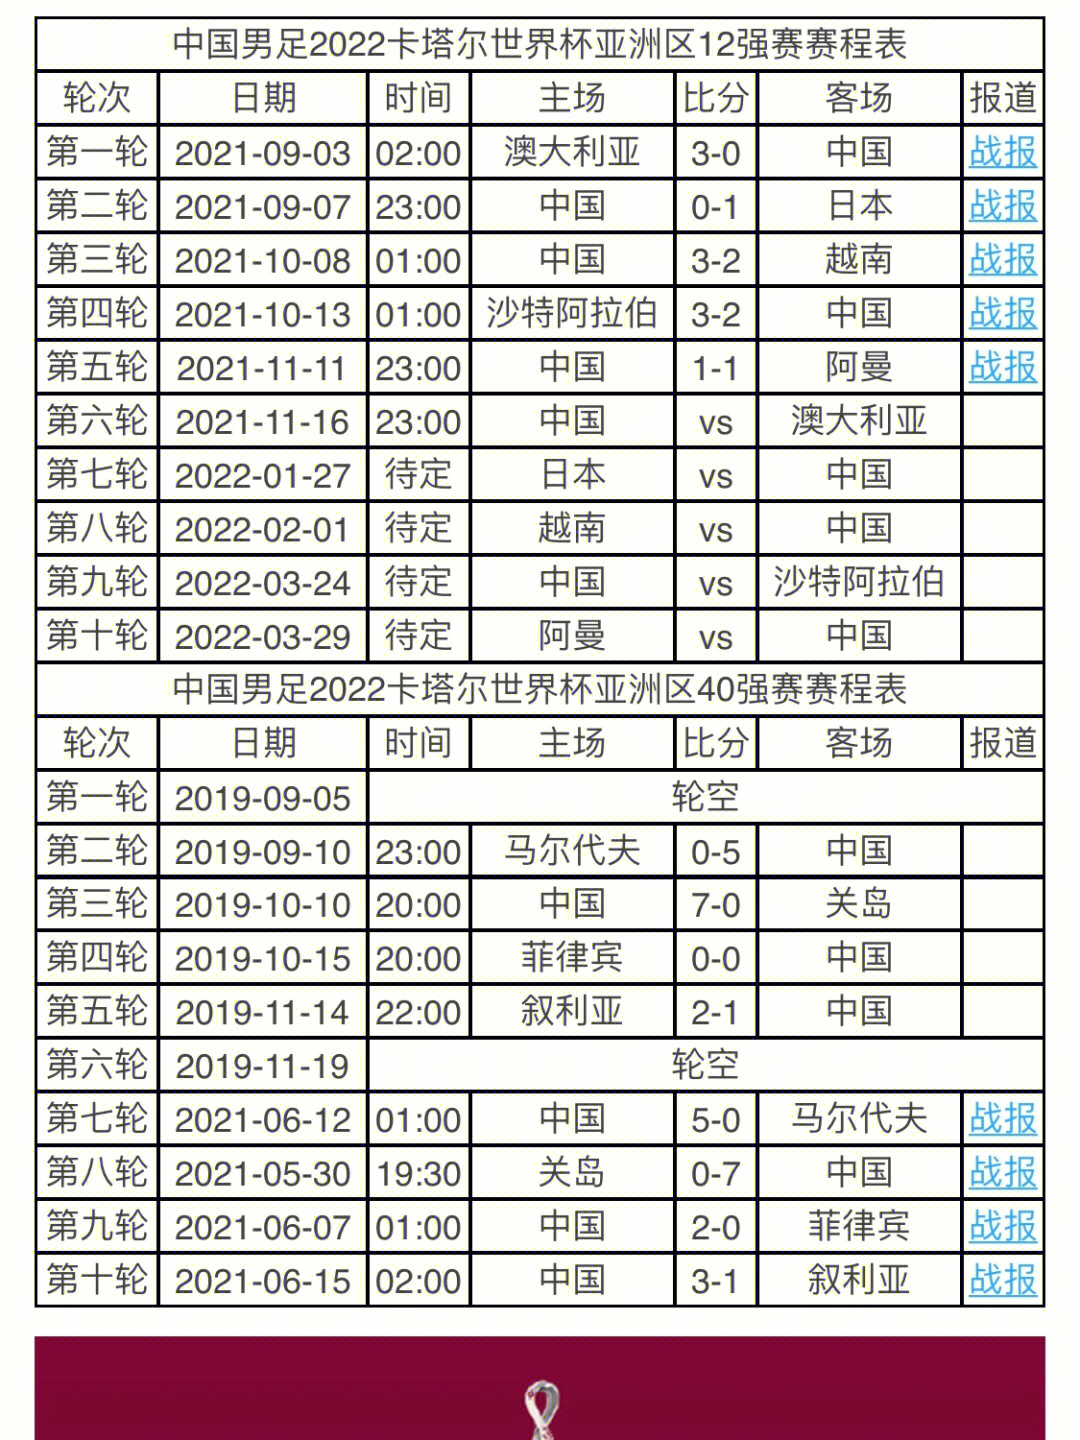 20212022中国足球世界杯预选赛时间表